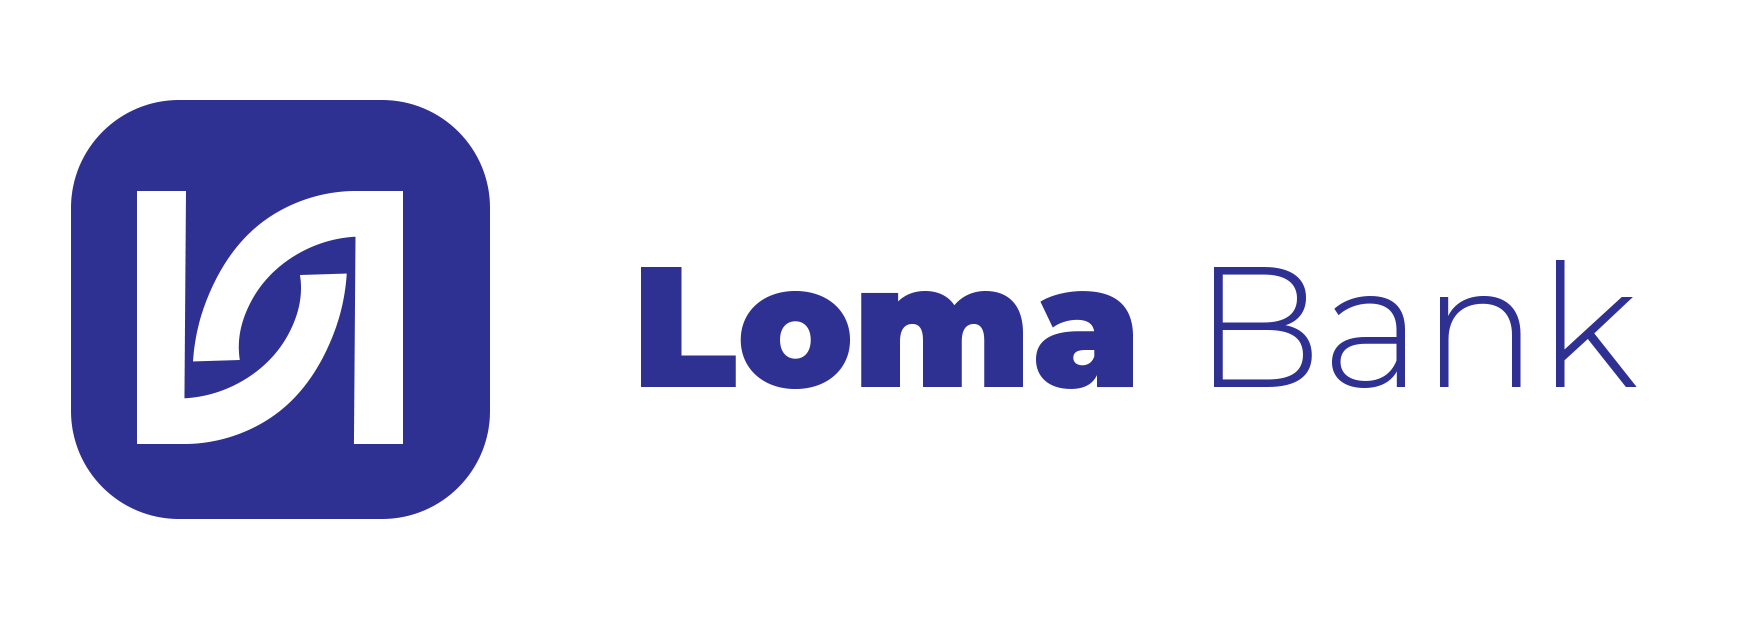 Loma Logo